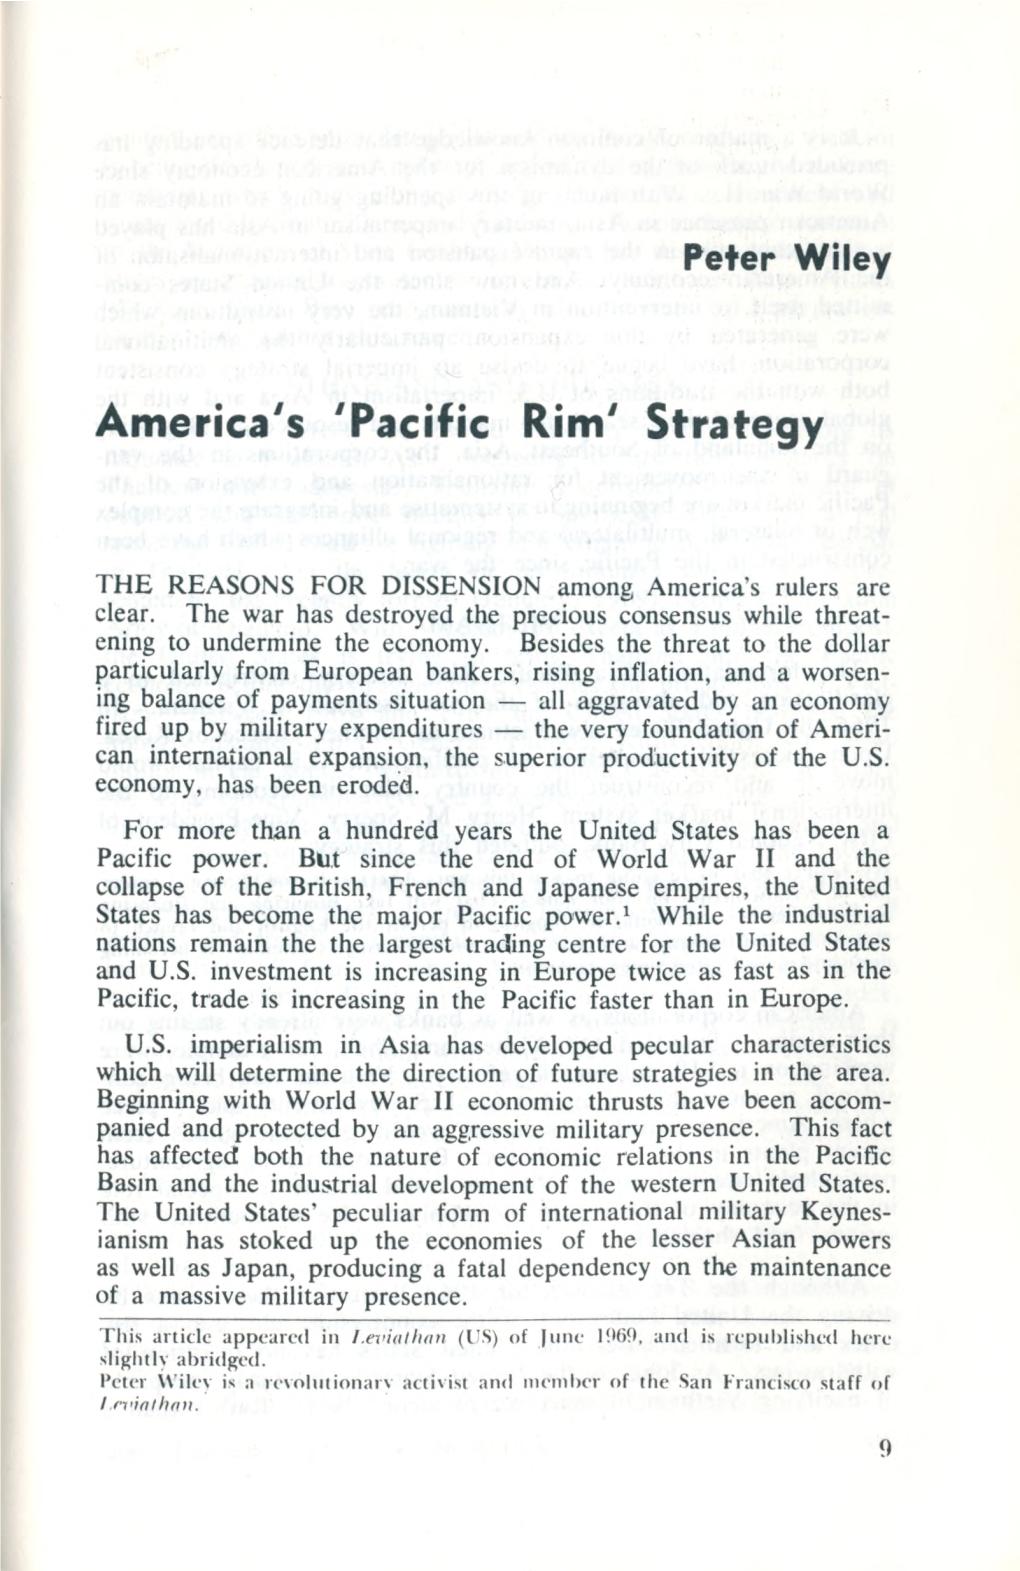 Pacific Rim' Strategy